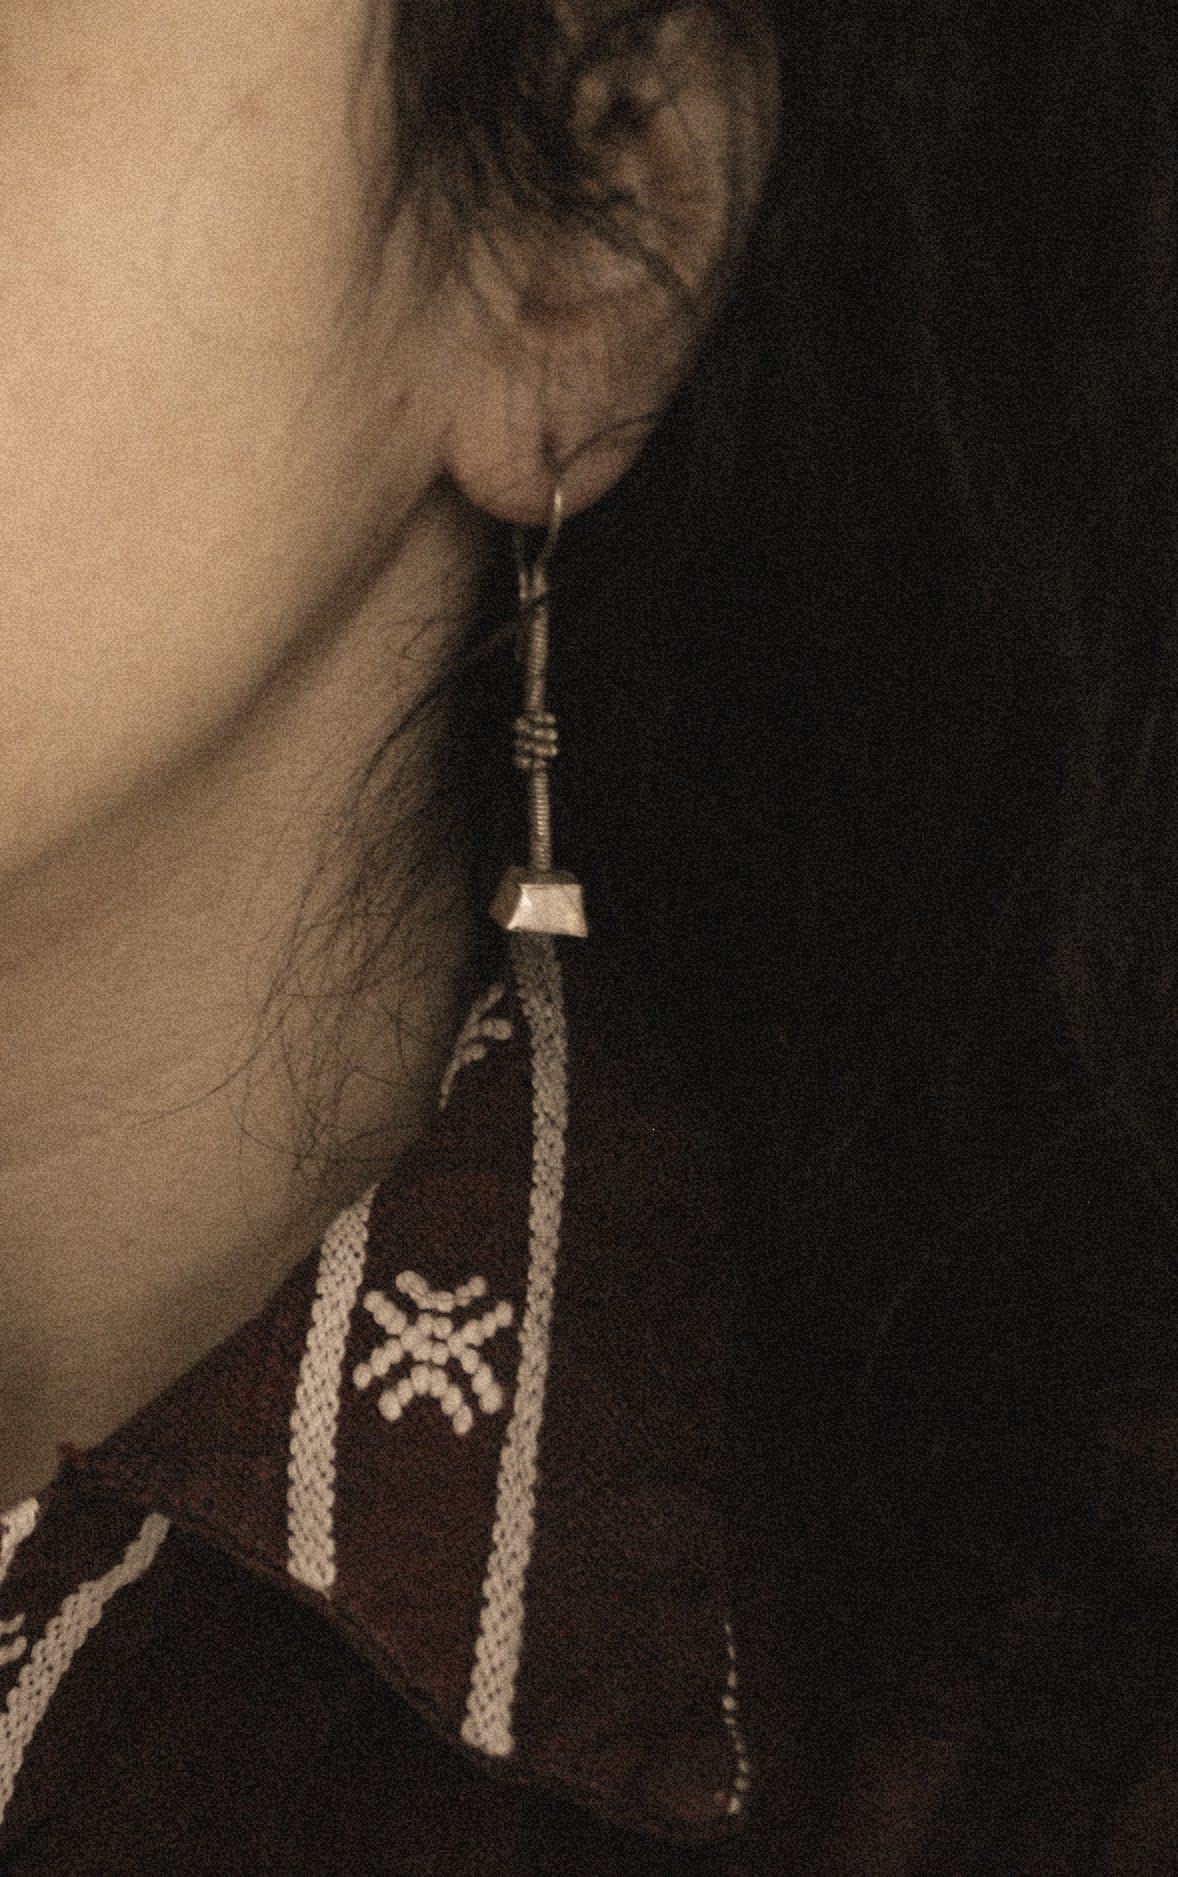 Rajasthan Silver Earrings - Gujarat Silver Earrings - Rabari Earrings - Tribal Rajasthan Silver Jewelry - Tribal Gypsy Earrings